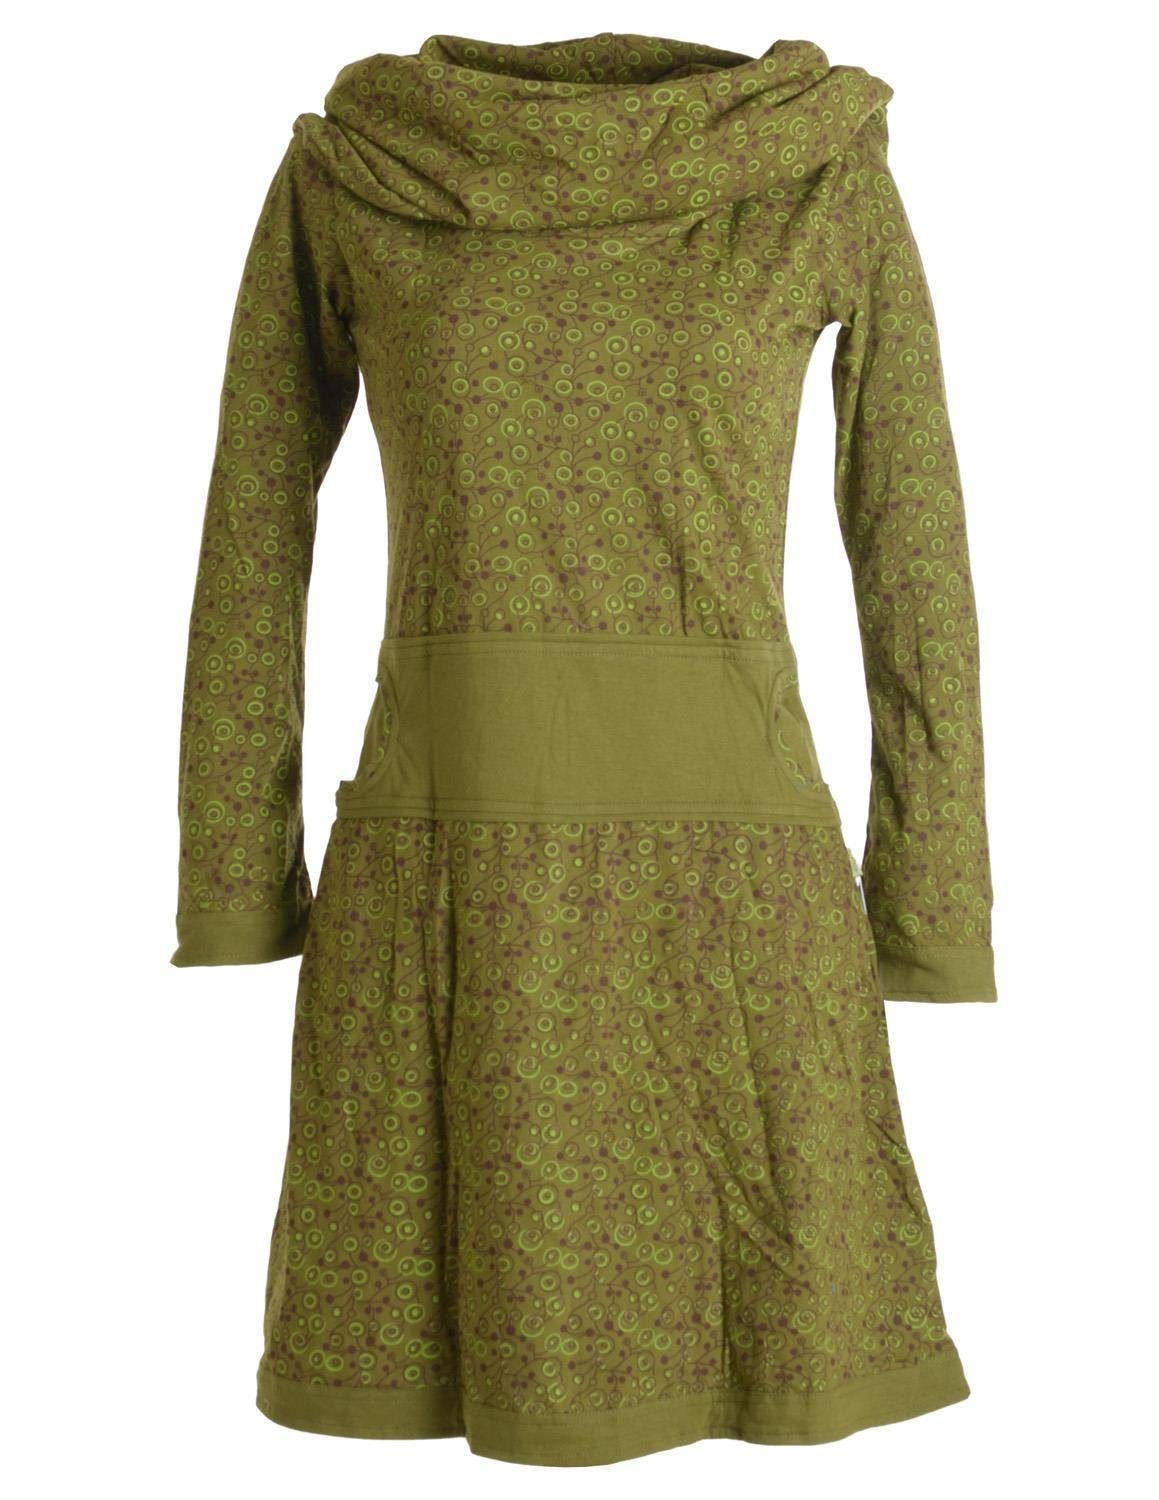 Vishes Jerseykleid Bedrucktes mit Hippie Boho, aus Style Baumwolle Goa, Schalkragen Kleid Ethno, olive